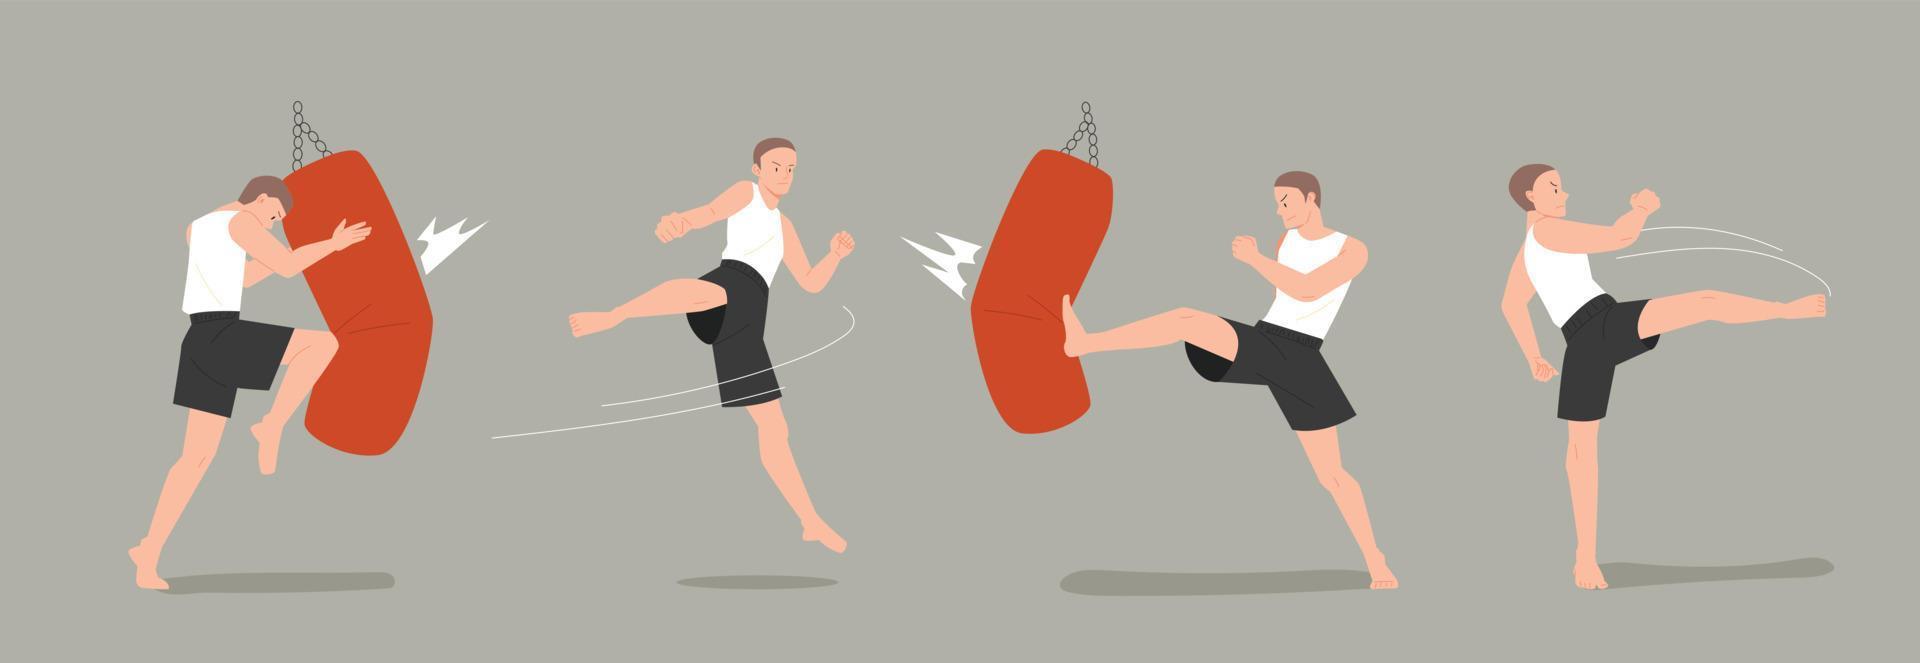 vários movimentos de treinamento de kickboxers na academia. ilustração em vetor estilo design plano.